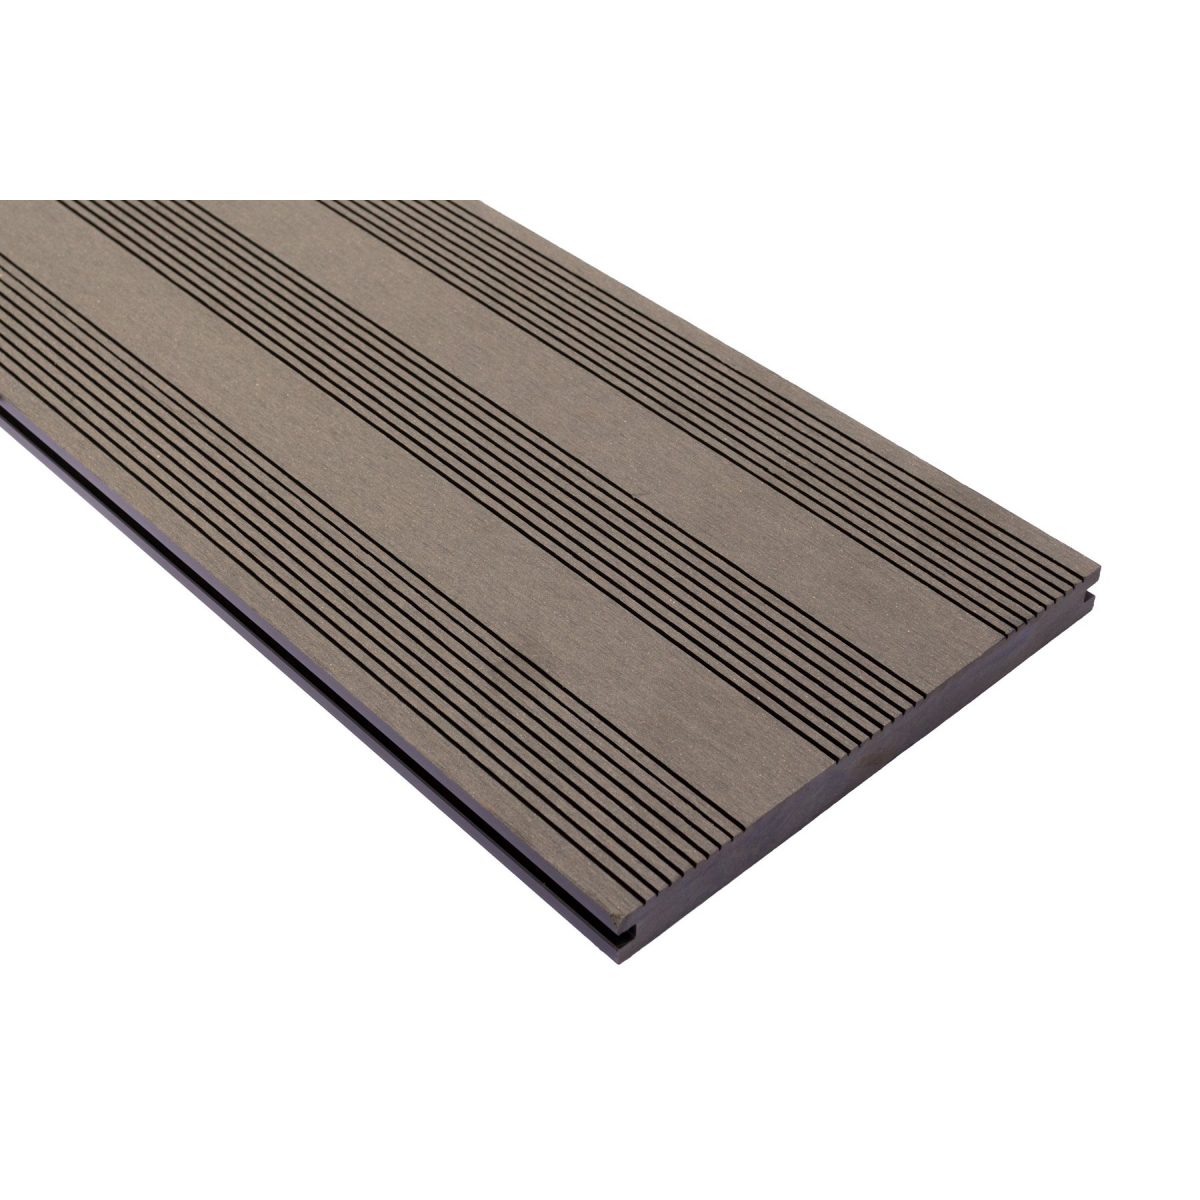 Vareprøve Terrassebord kompositt Wideplank massiv grå 22cm bredde